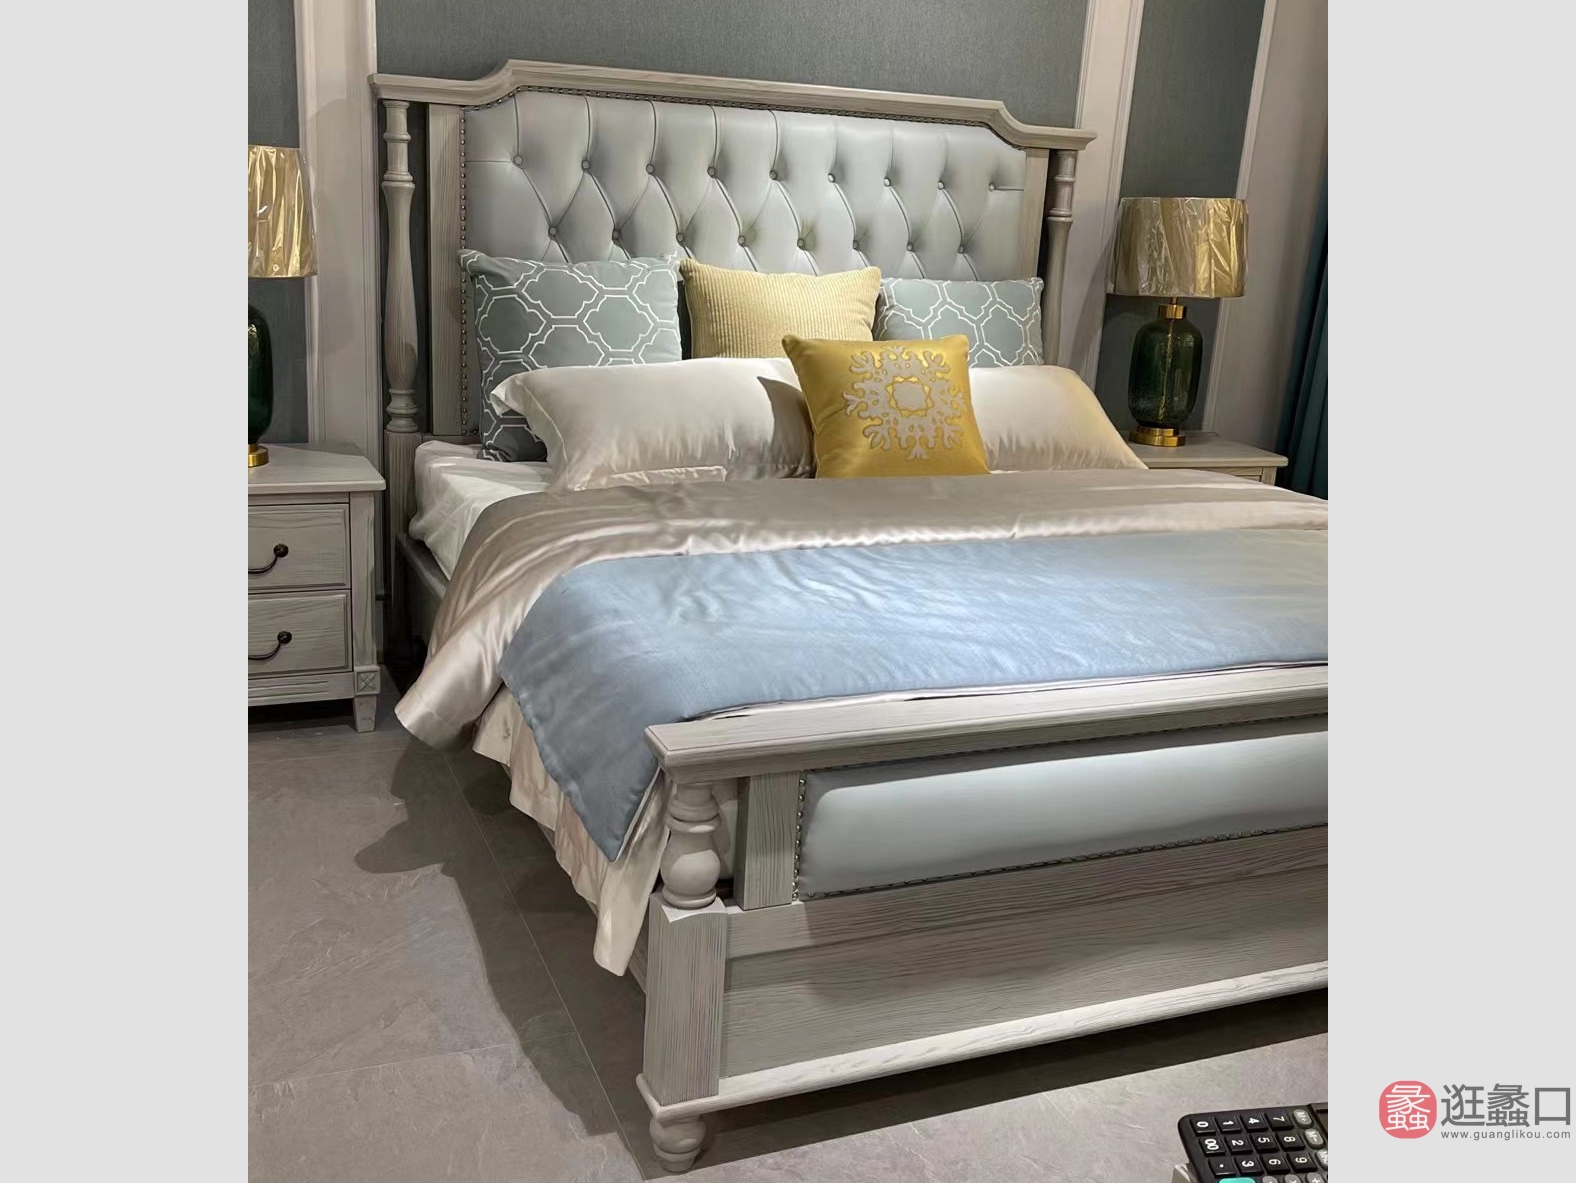 利美达家具卧室美式轻奢实木床双人床主卧LMD003